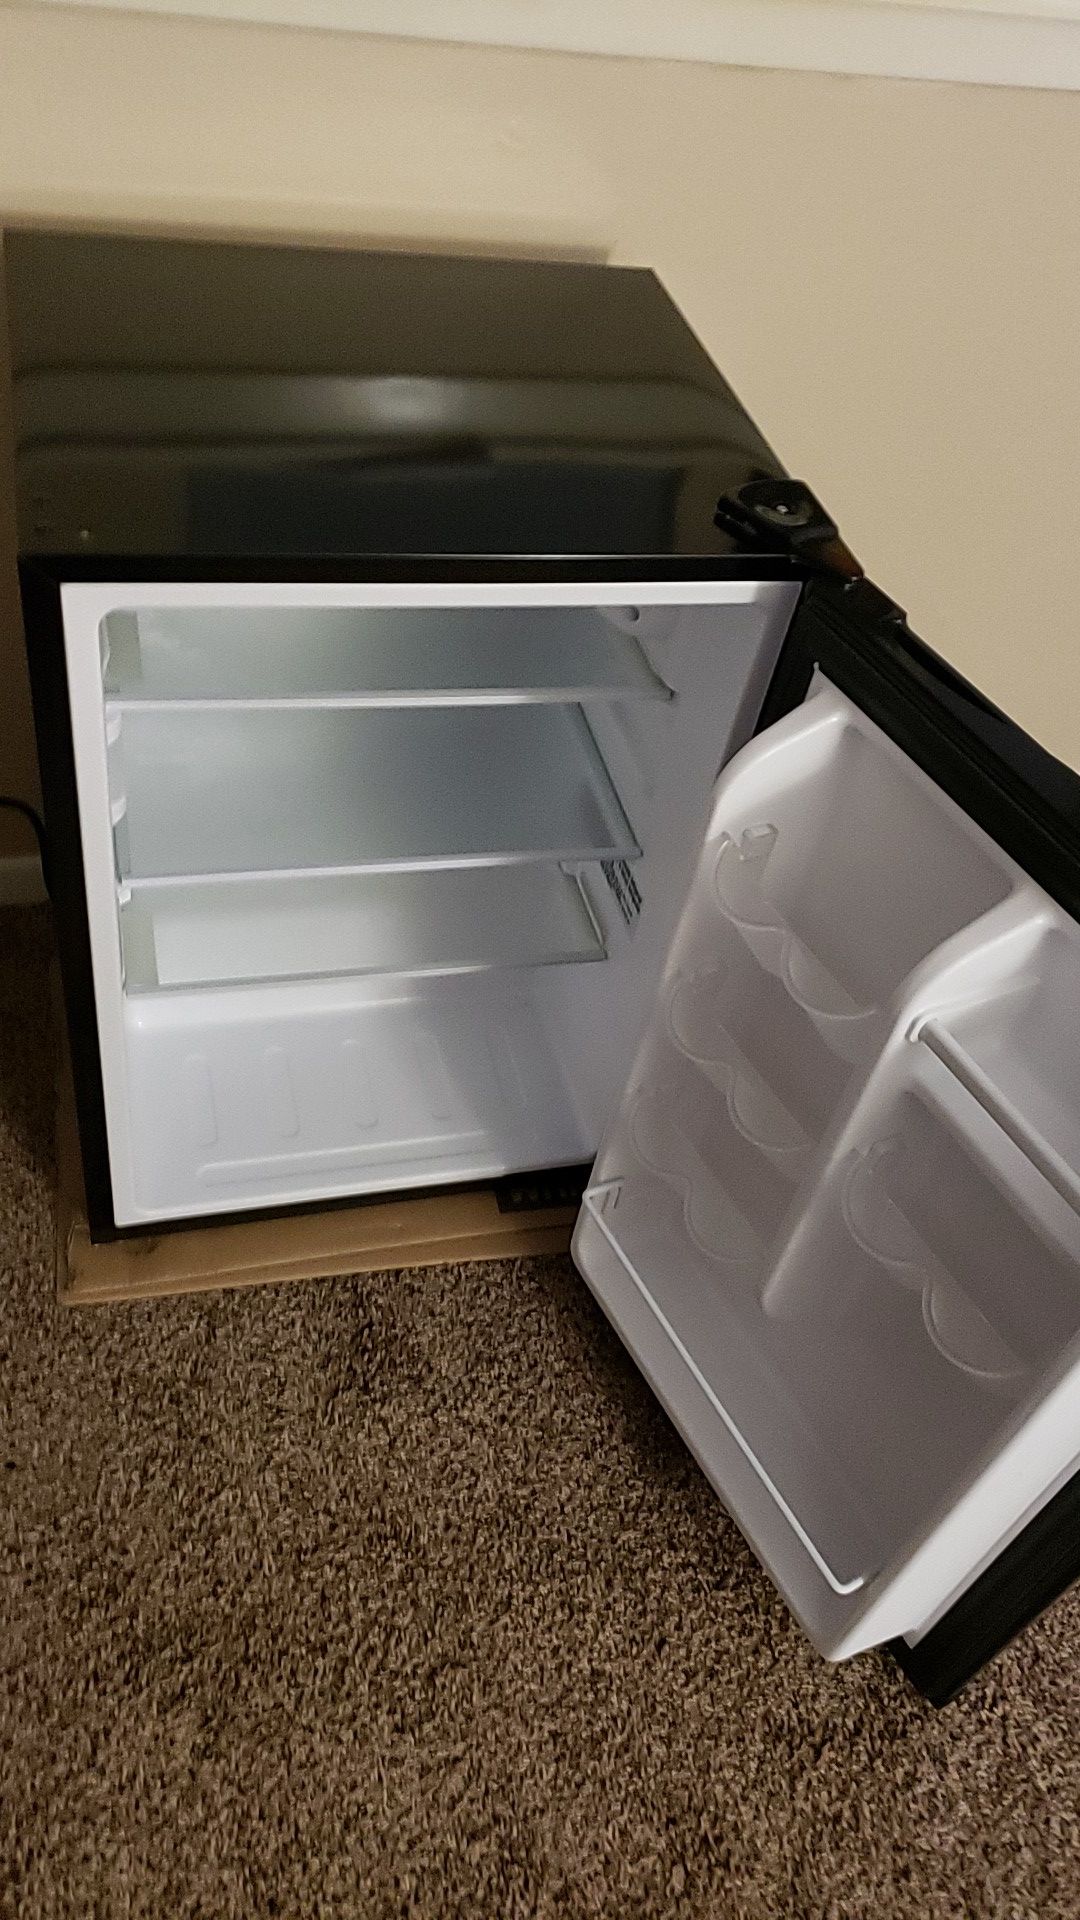 Insignia mini refrigerator